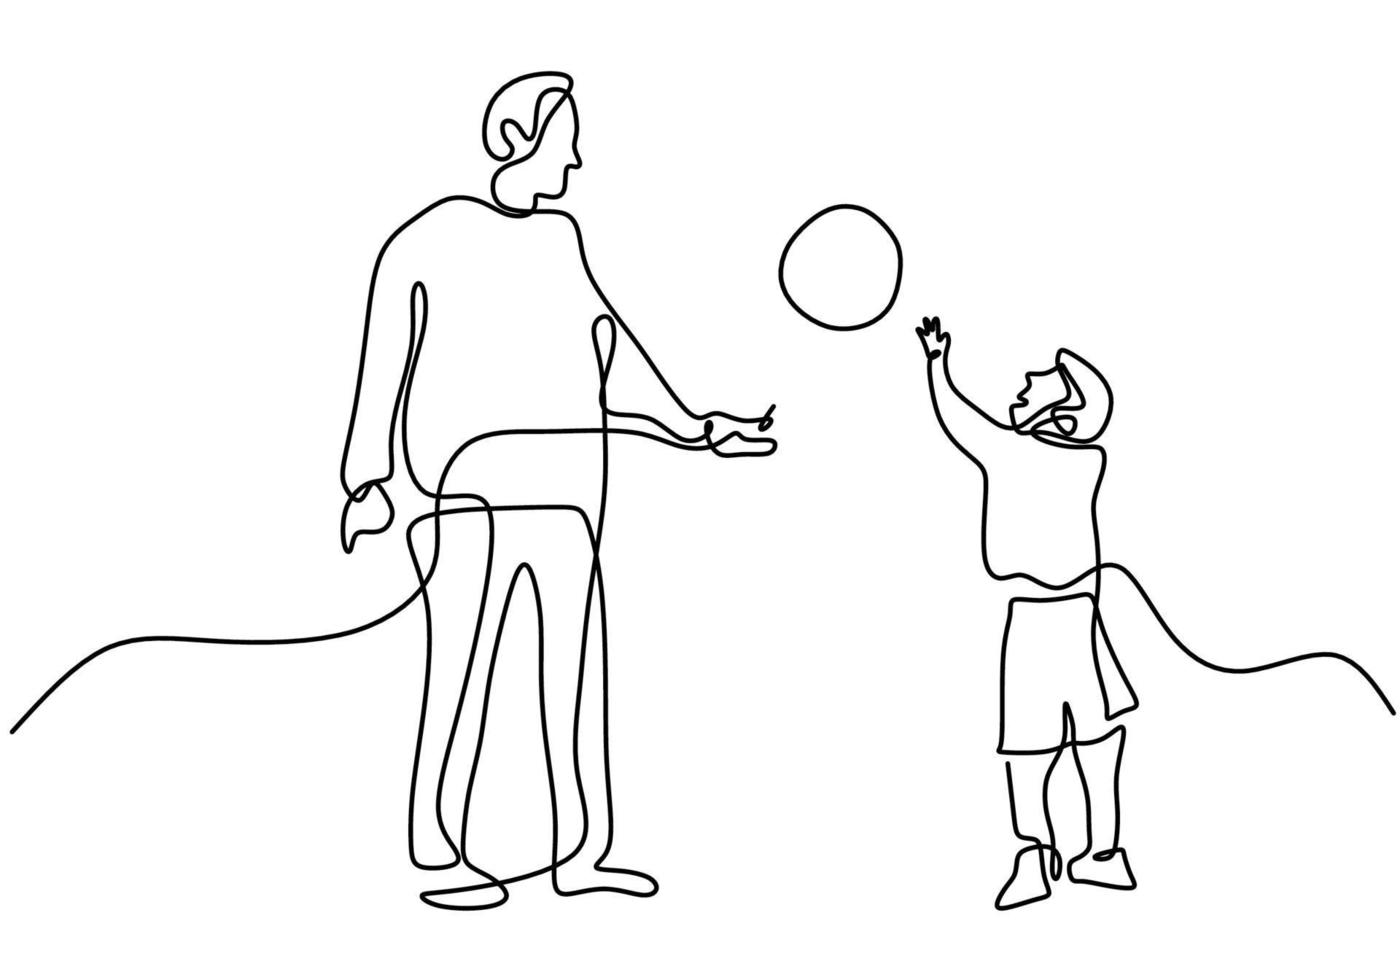 en enda linje ritning av ung far med son spela fotboll på fältet. en pappa leker med sin son under semestern. lyckligt föräldraskap lärande koncept handritad konst minimalistisk design vektor